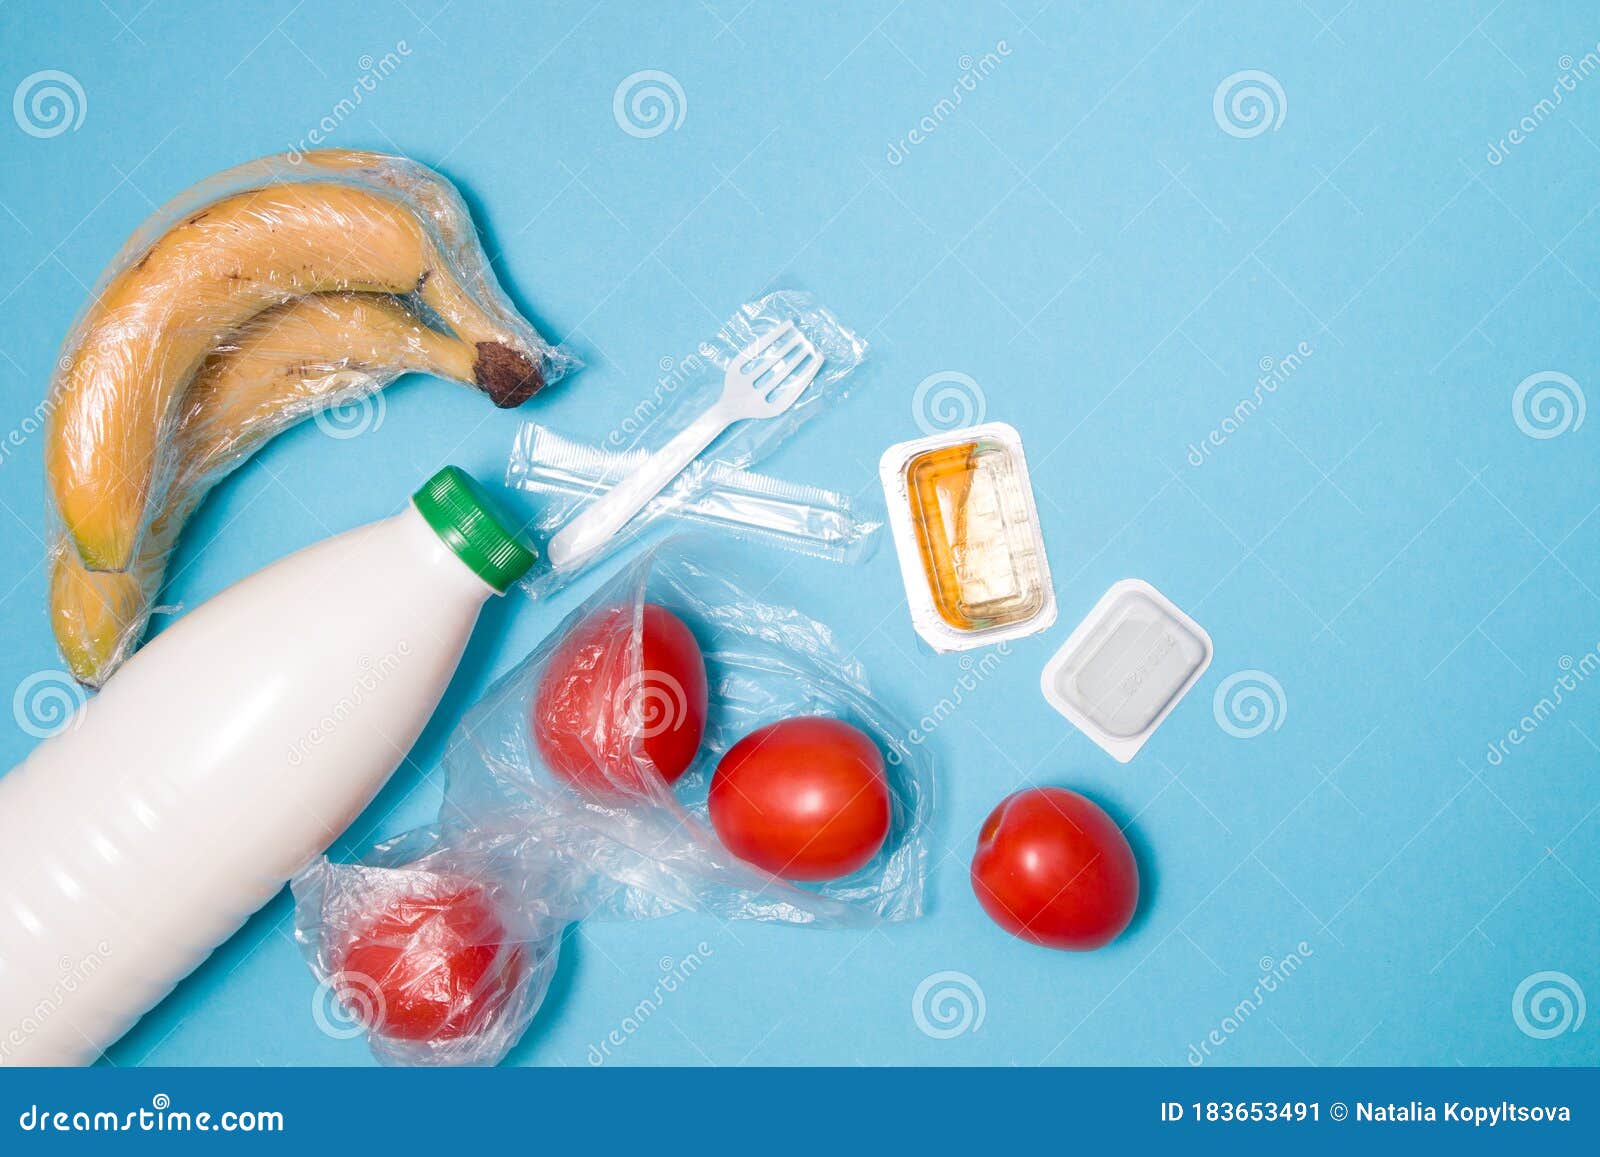 Soorten Plastic Verpakkingen Op Een Blauwe Achtergrond Stock Afbeelding - Image of geïsoleerd: 183653491